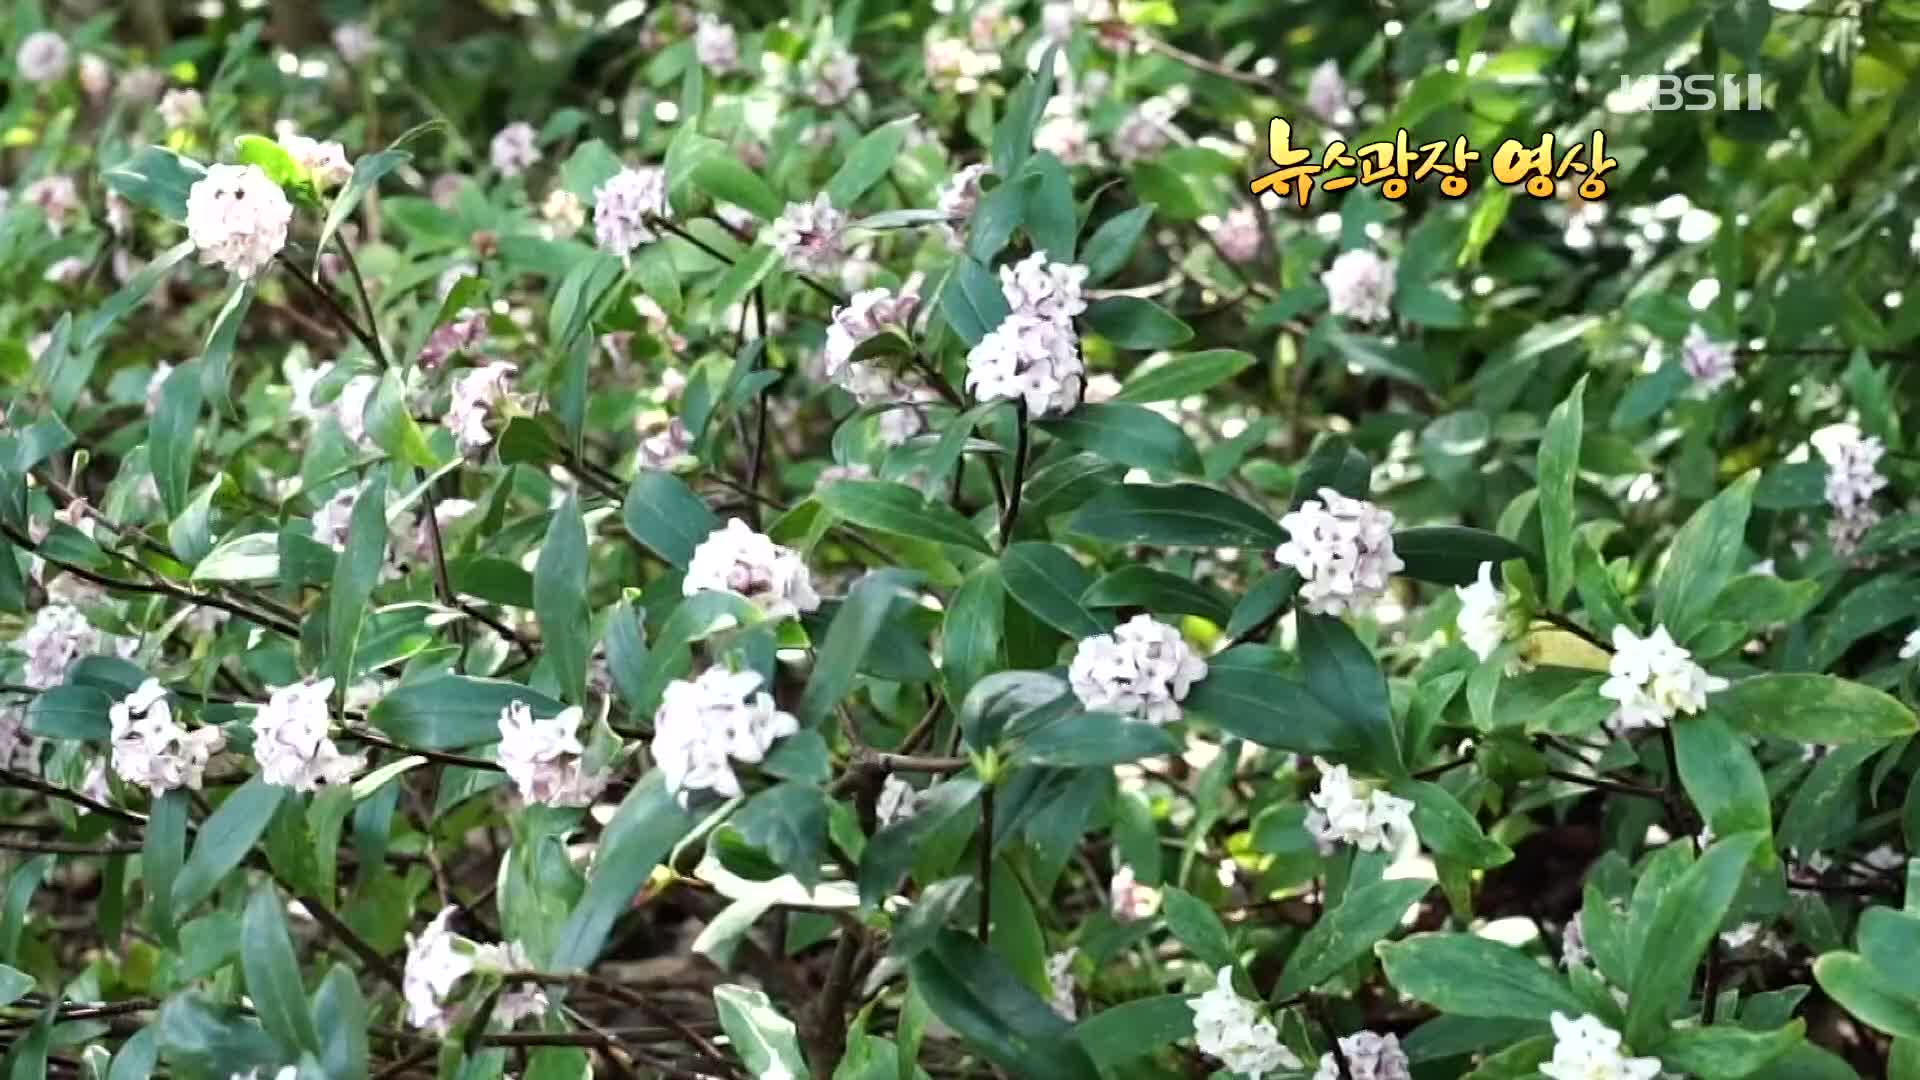 [뉴스광장 영상] 봄이 오는 장사도